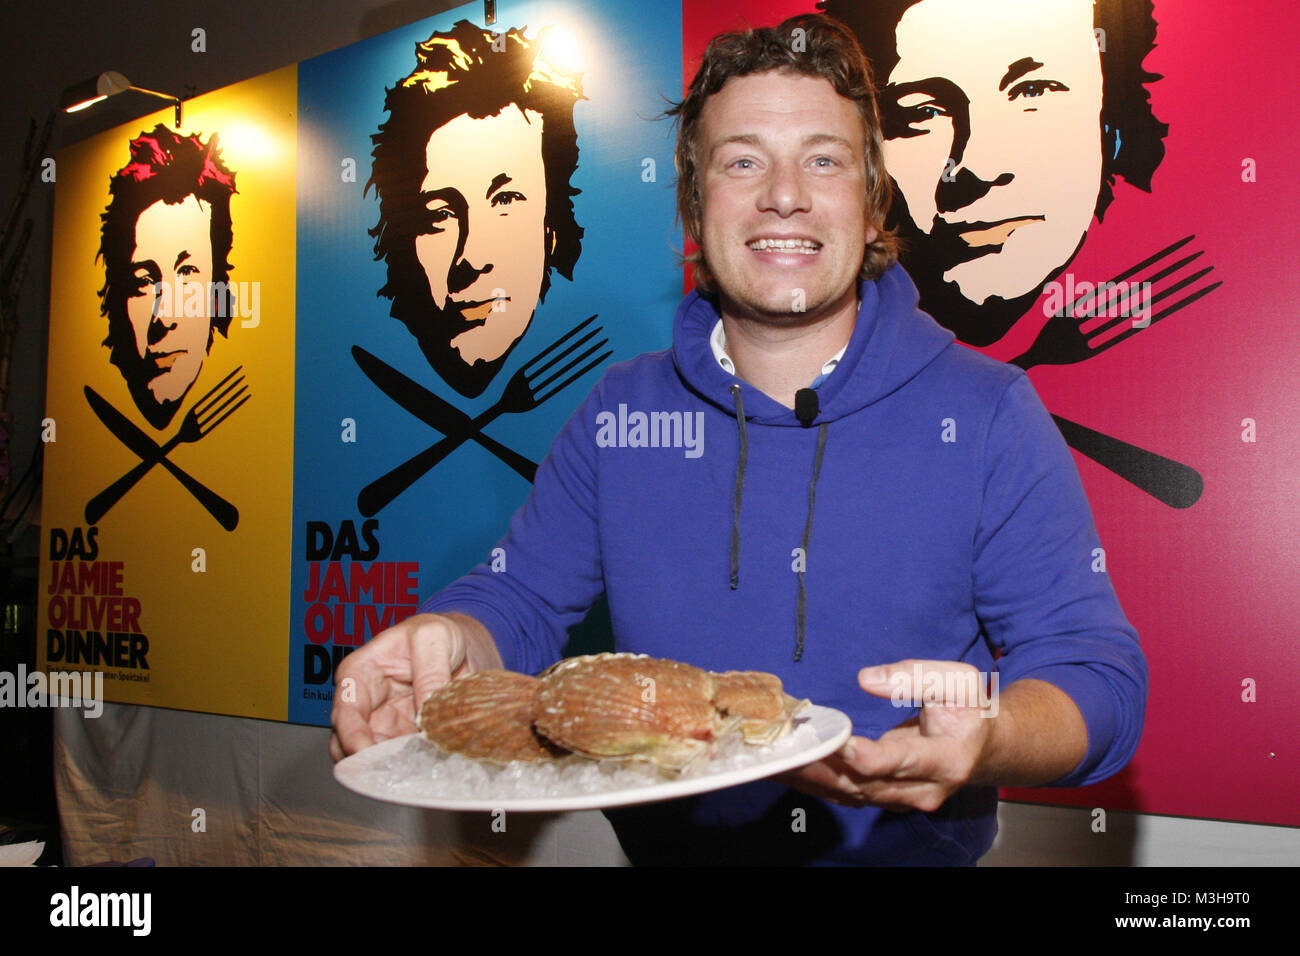 Von Praesentation 'Dcomo Jamie Oliver Cena' - ein kulinarisches Theater Spektakel mit dem englischen Starkoch Jamie Oliver, Showbeginn ab 13.11.2008, Hamburgo, 01.09.2008 Foto de stock